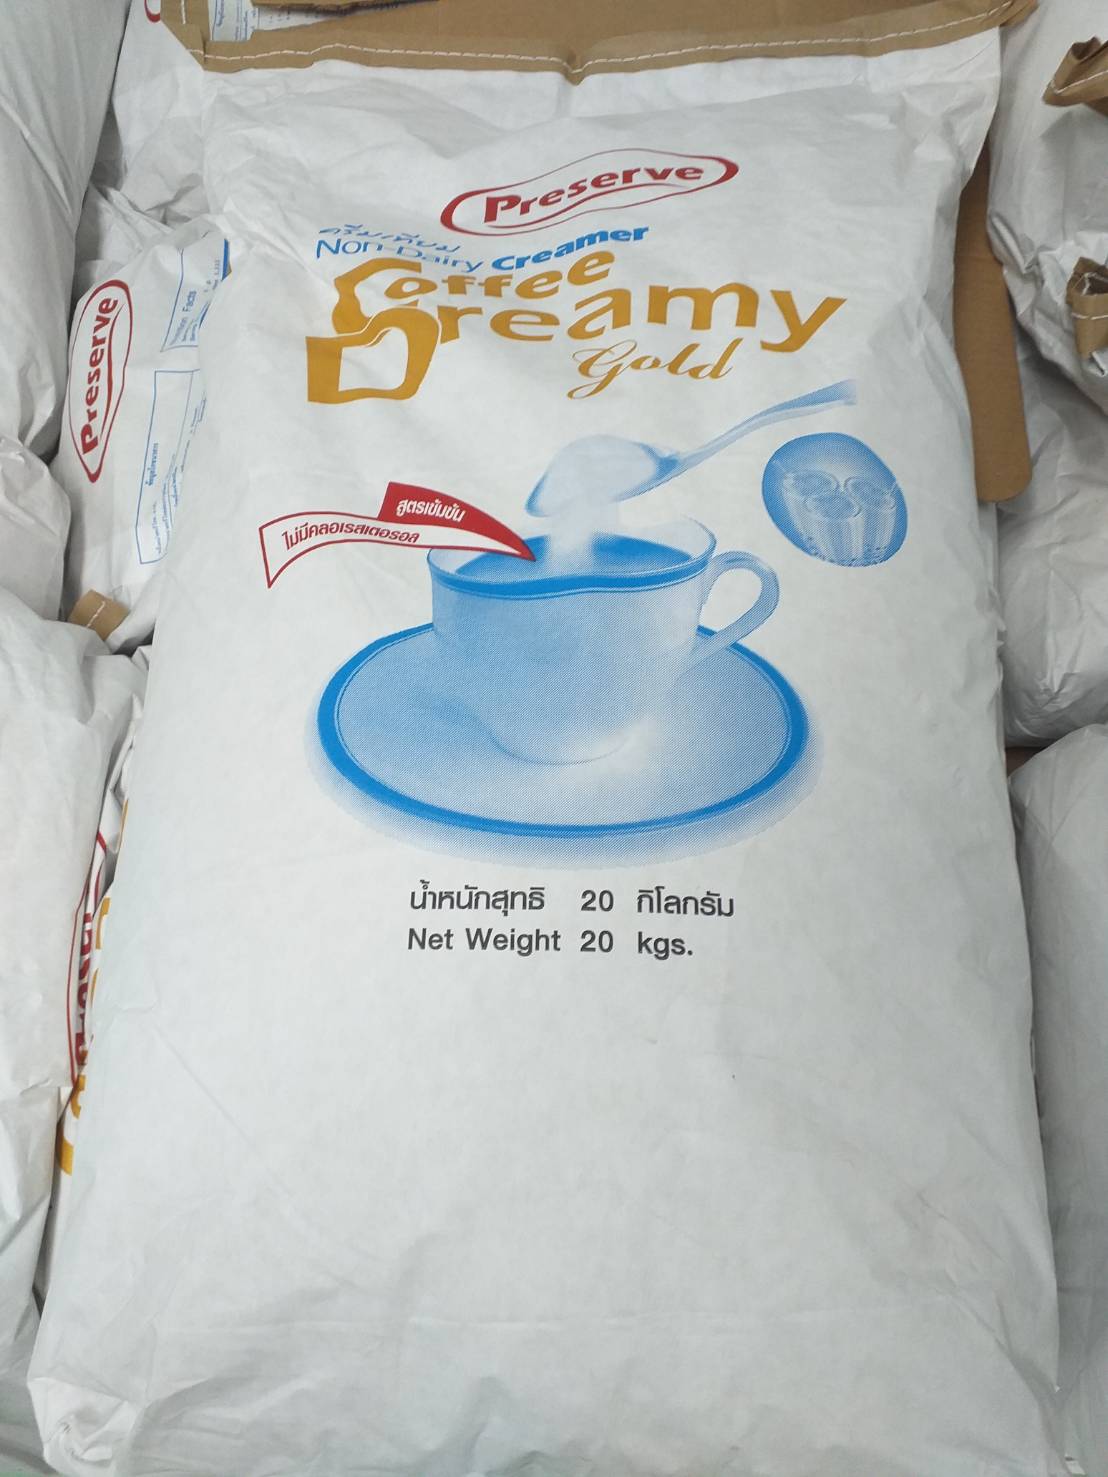 Non-dairy Creamer (ครีมเทียม) สูตรเข้มข้นแบ่งจำหน่าย 1 kg. ใช้ชงเครื่องดื่มกาแฟ ชา ทำไอศกรีม บิงซู (ครีมเทียม คอฟฟีเมต ครีมเมอร์)